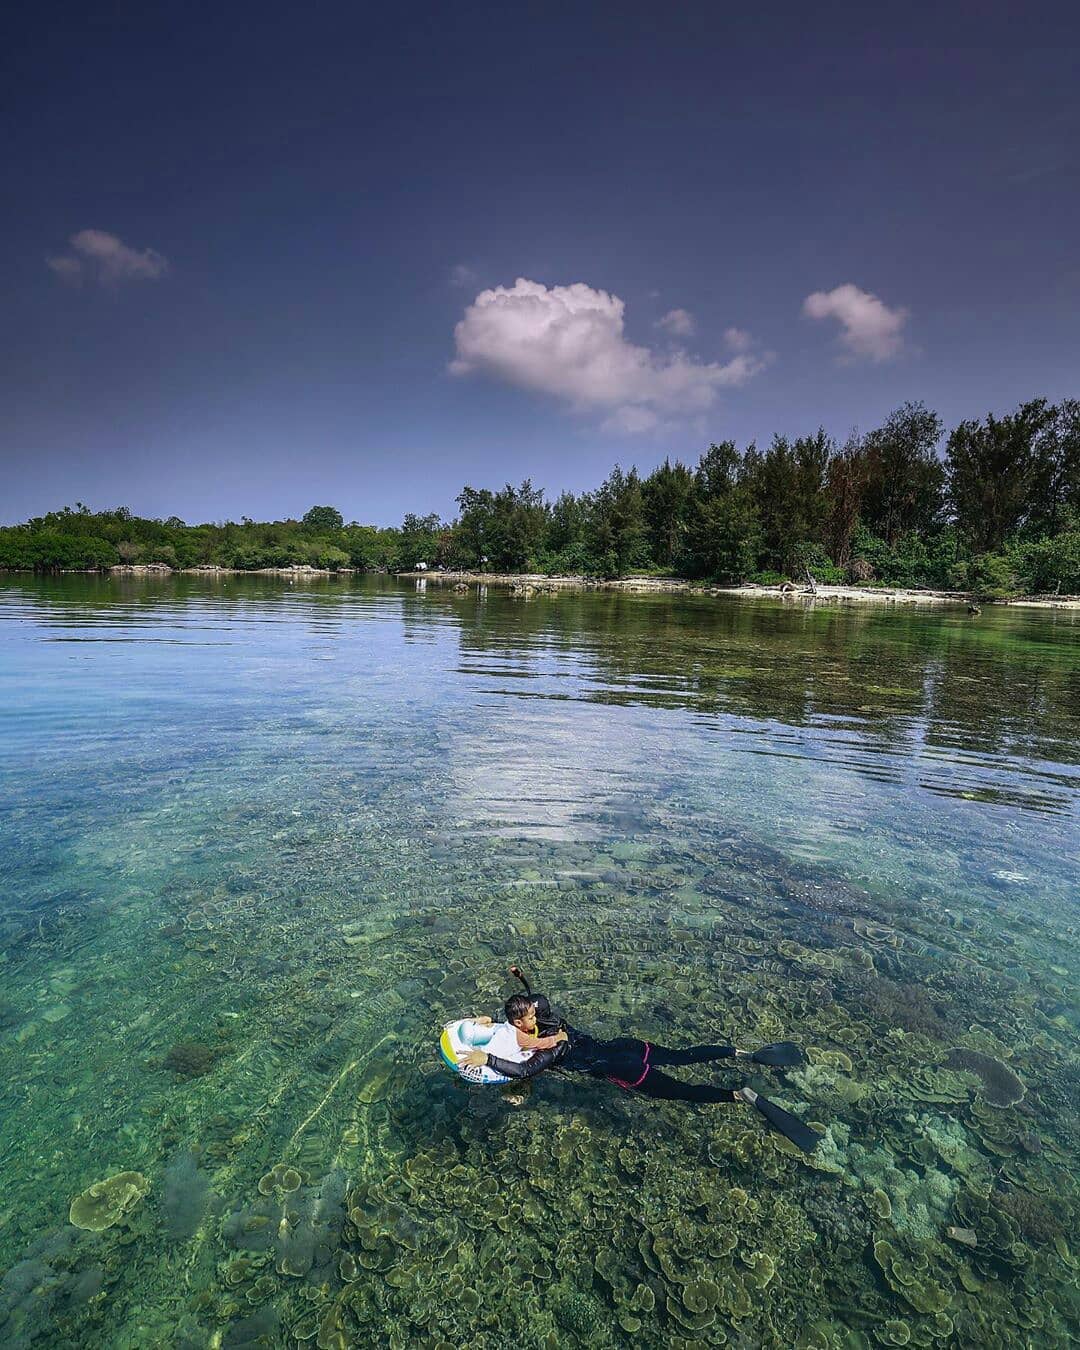 Pantai Pulau Sangiang Anyer Image From @adityafajarr